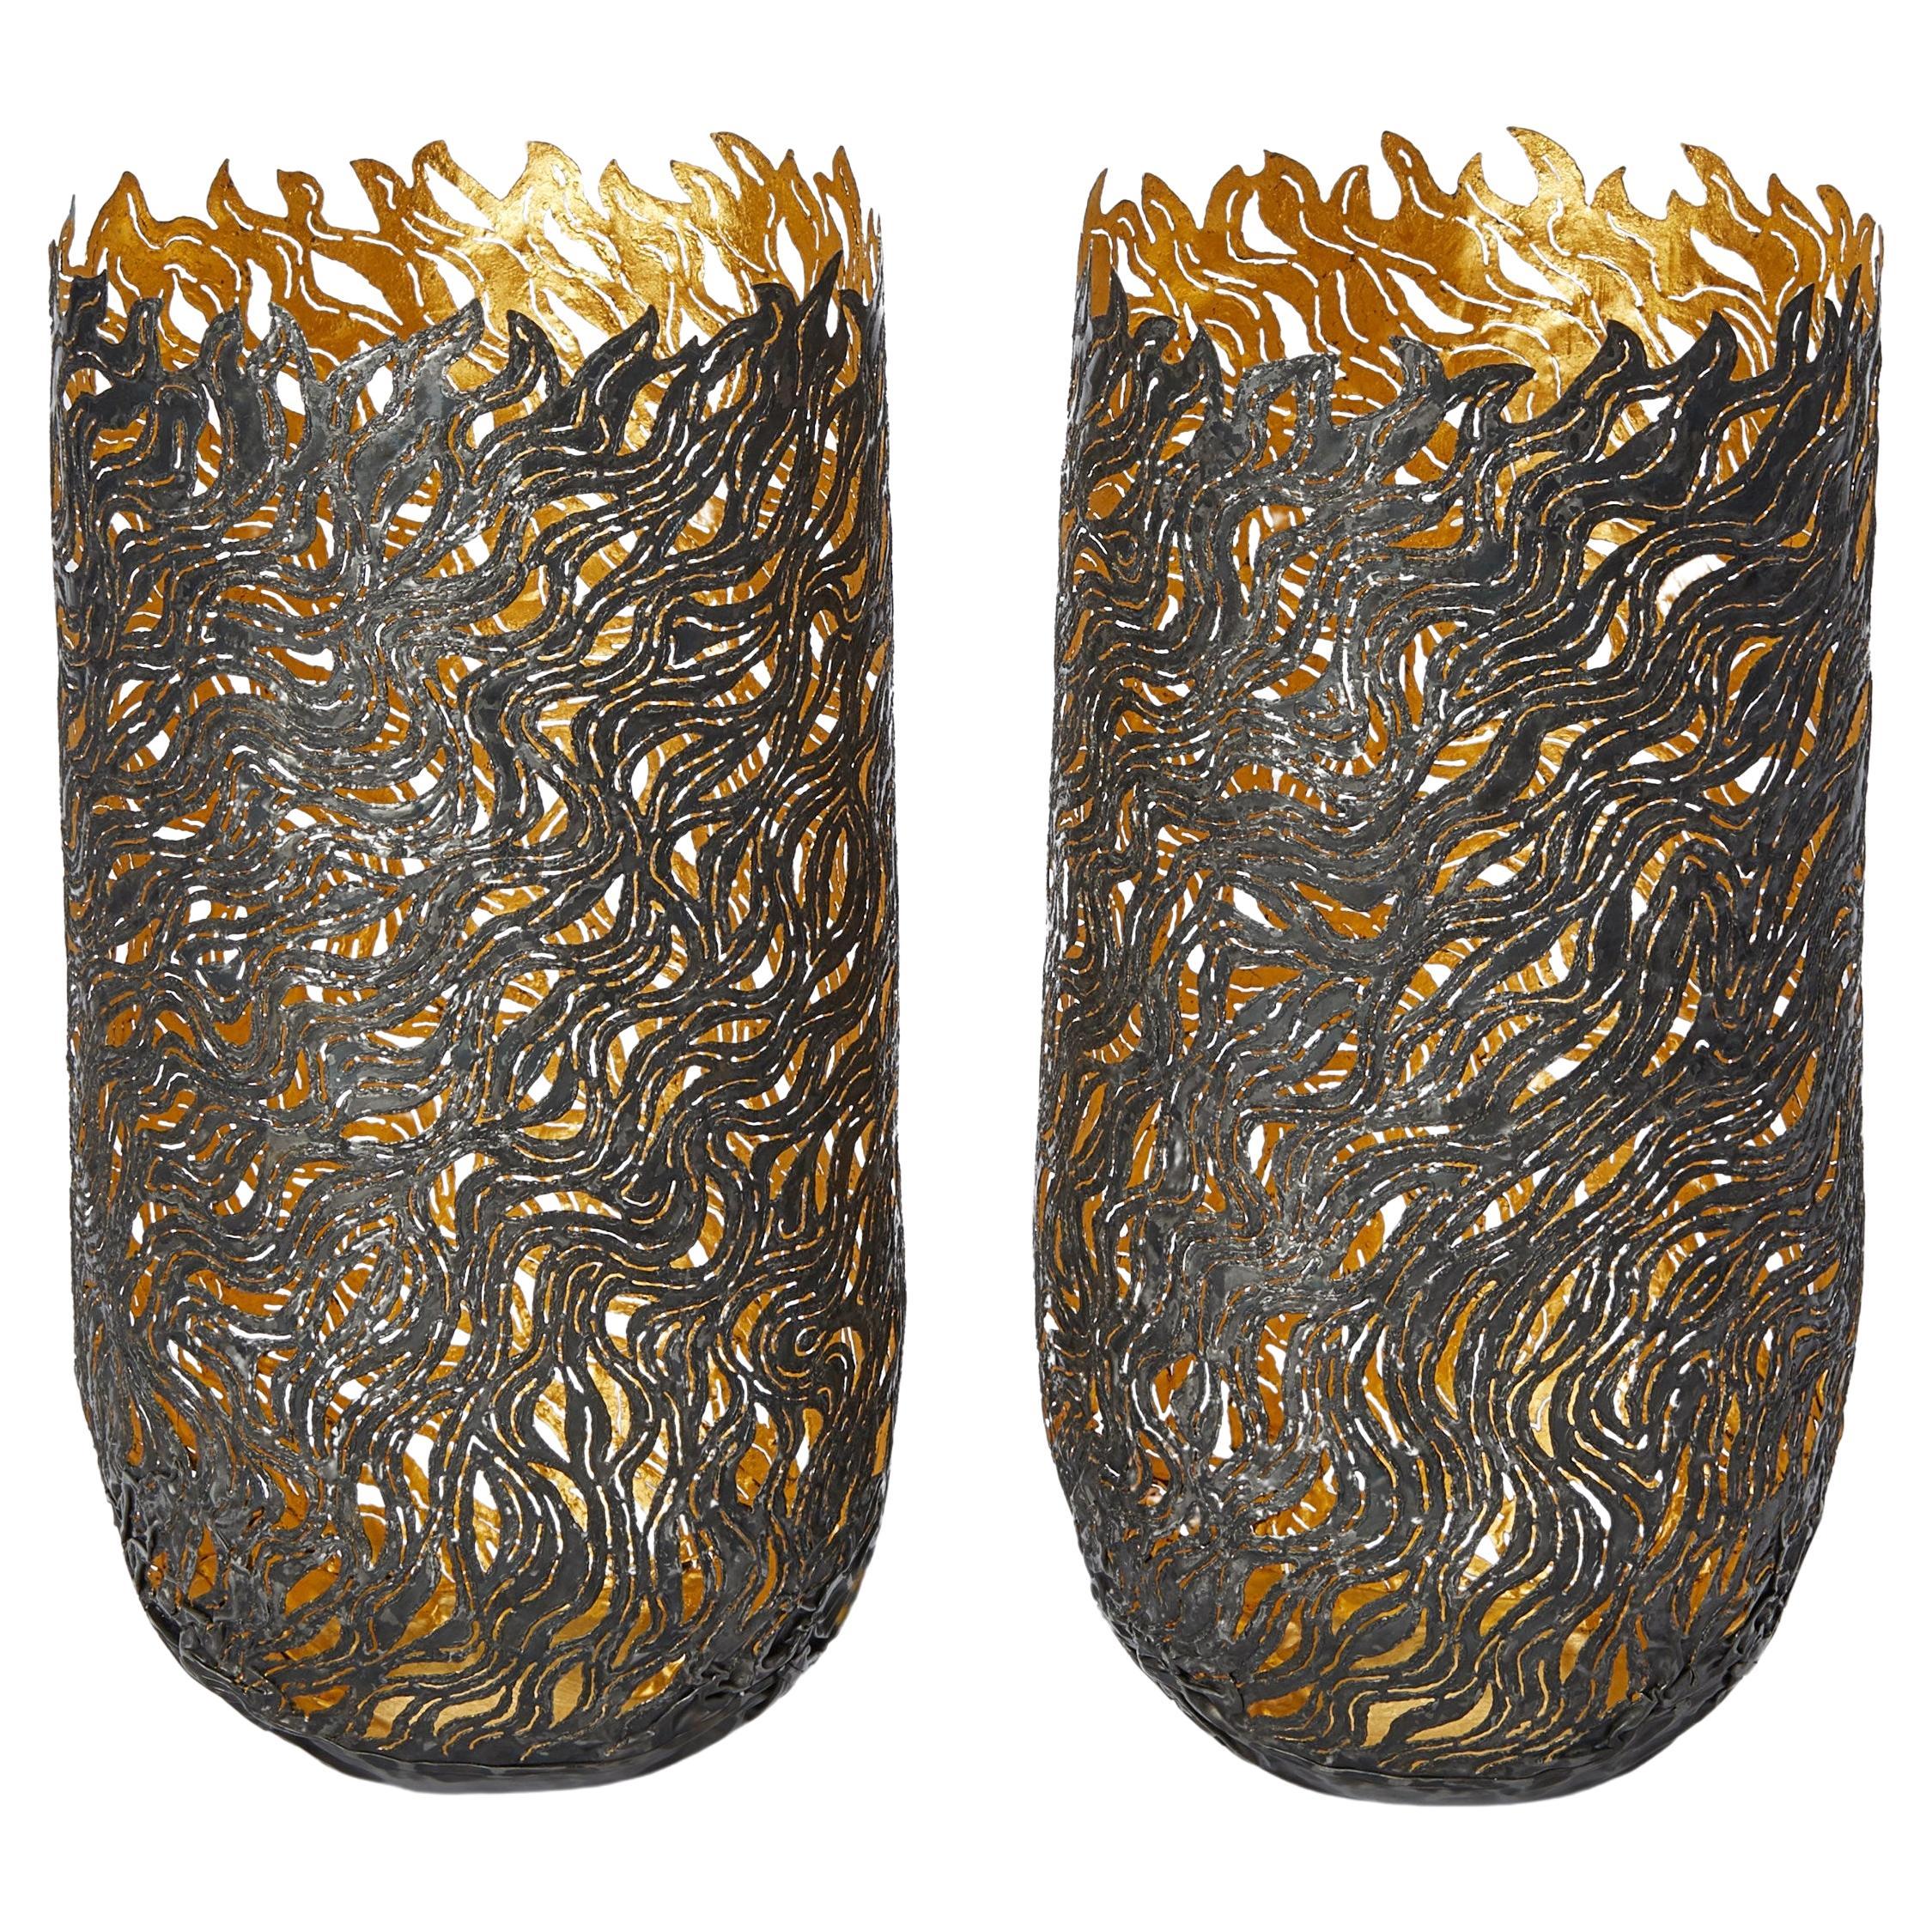  Herbst-Tänzergefäße, organisch strukturierte Stahl- und Goldgefäße von Claire Malet